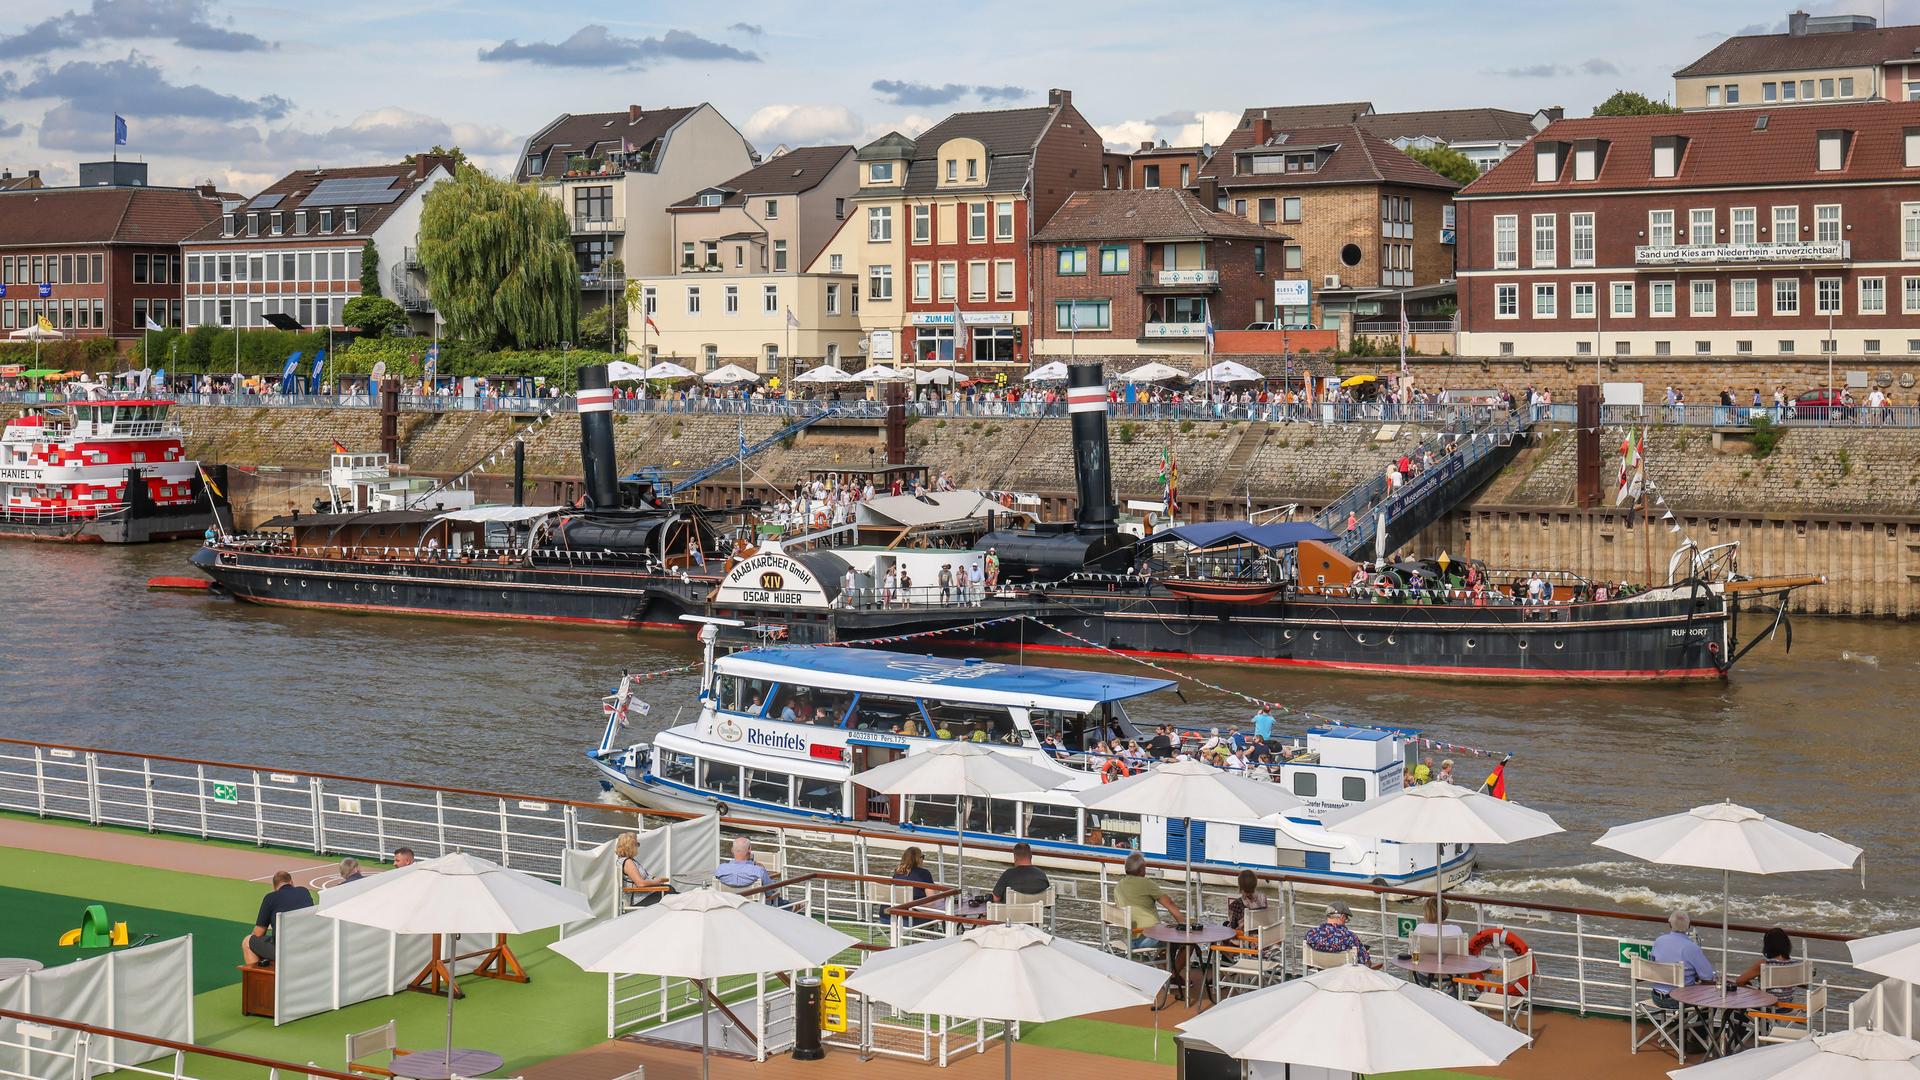 Bei einem Hafenfest liegen Flusskreuzfahrt- und Museumsschiffe im Hafen. Im Bildhintergrund sind Wohnhäuser zu sehen.